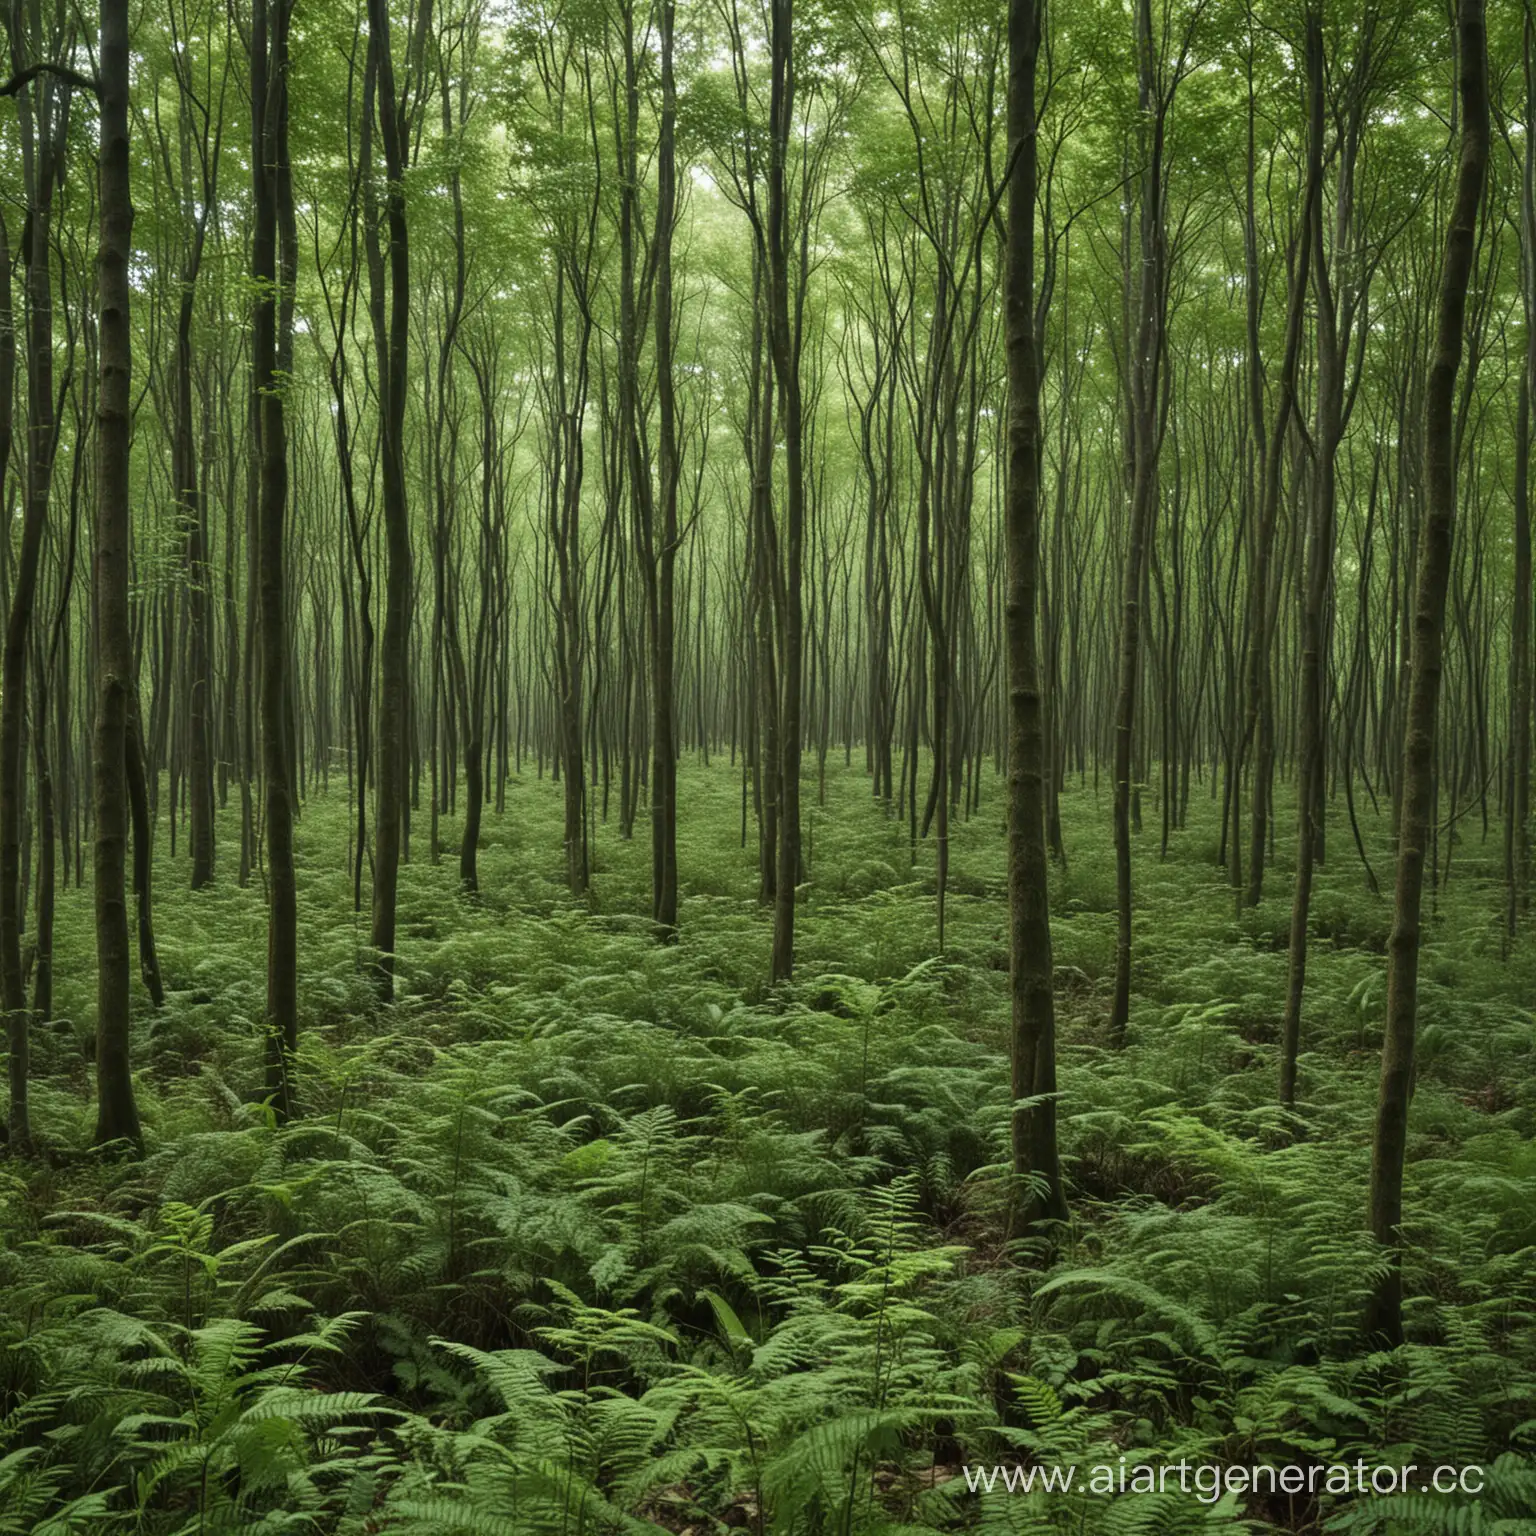  лес, густой лес, большой, густой, много зарослей, ничего не видно кроме растений